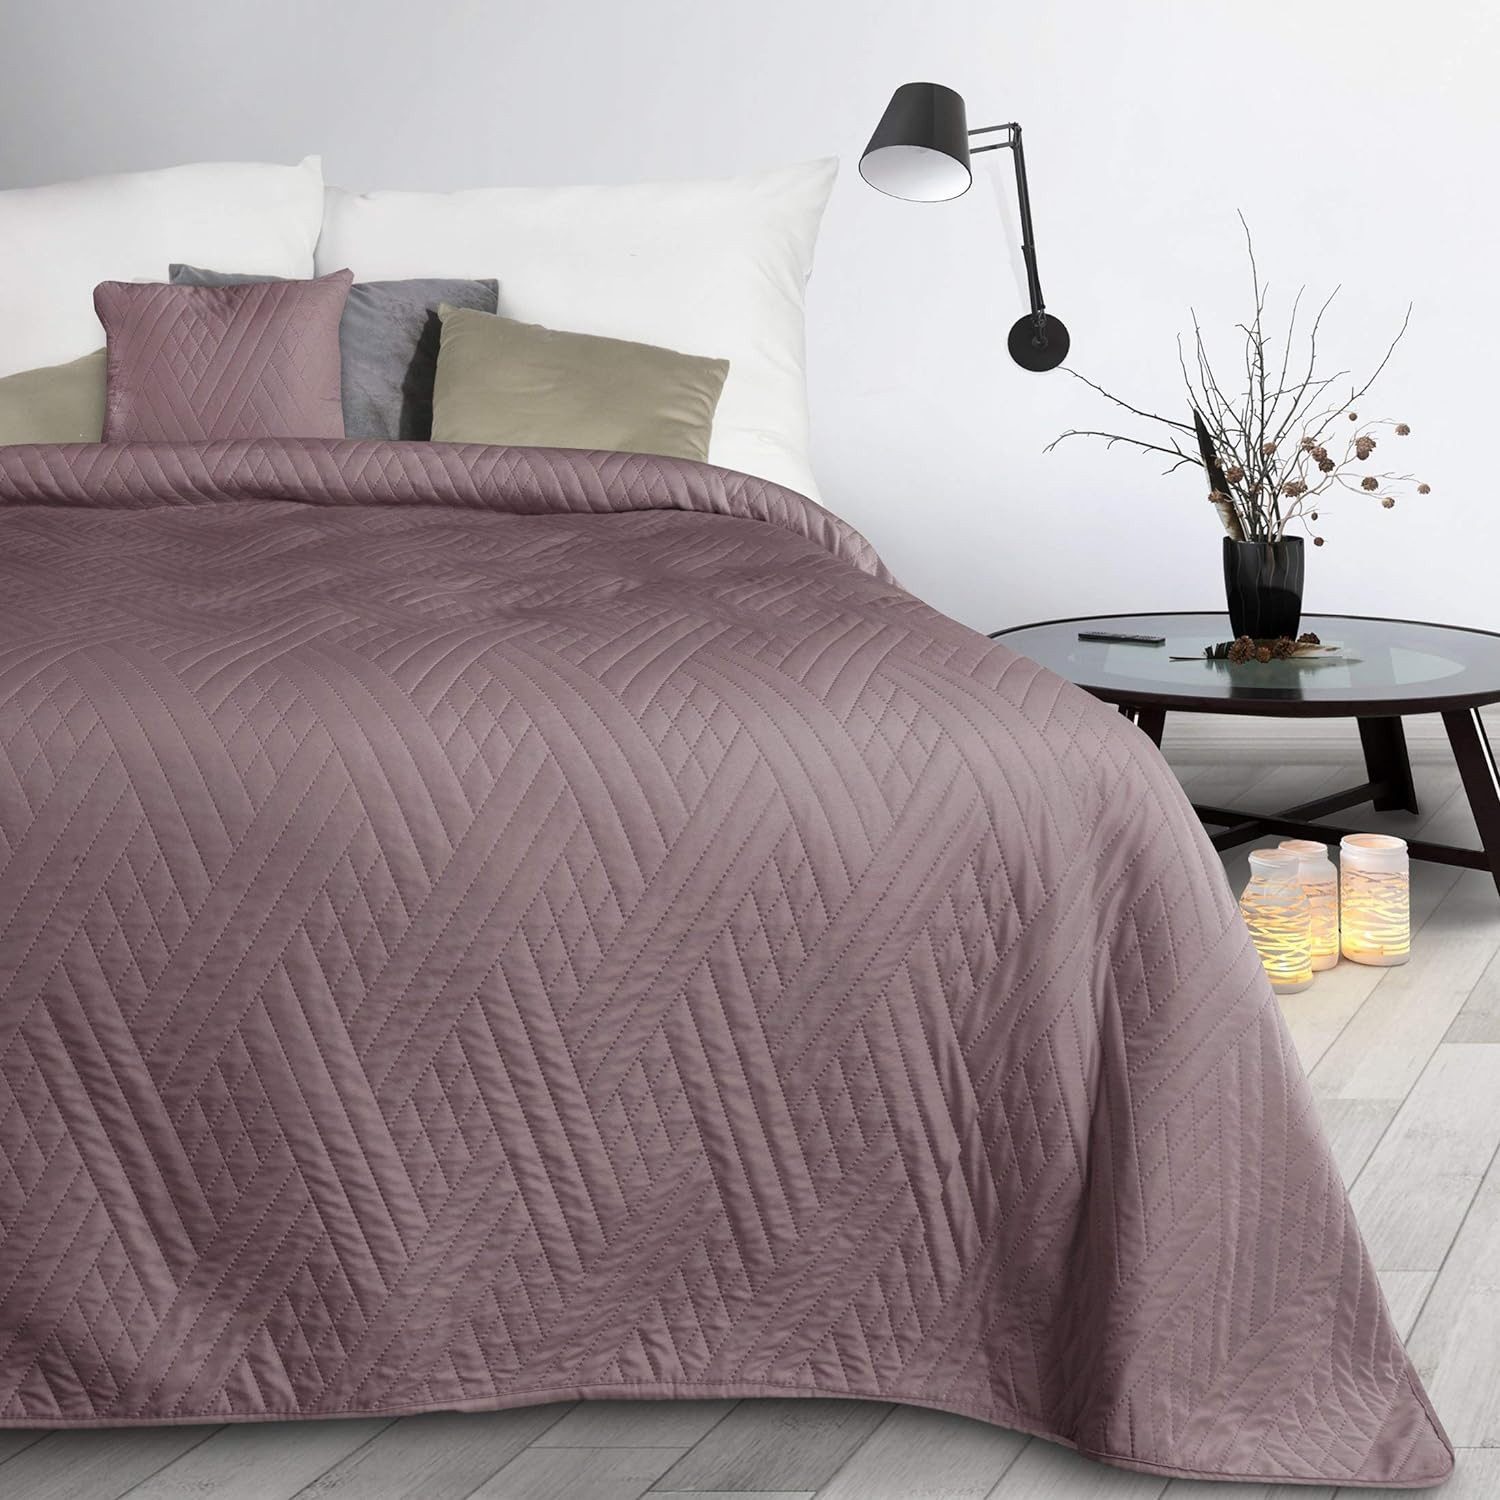 Bettüberwurf Zweiseitige Decke, Design91, dekorative Decke ganzjährige Sofadecke, einfarbige moderne Tagesdecke